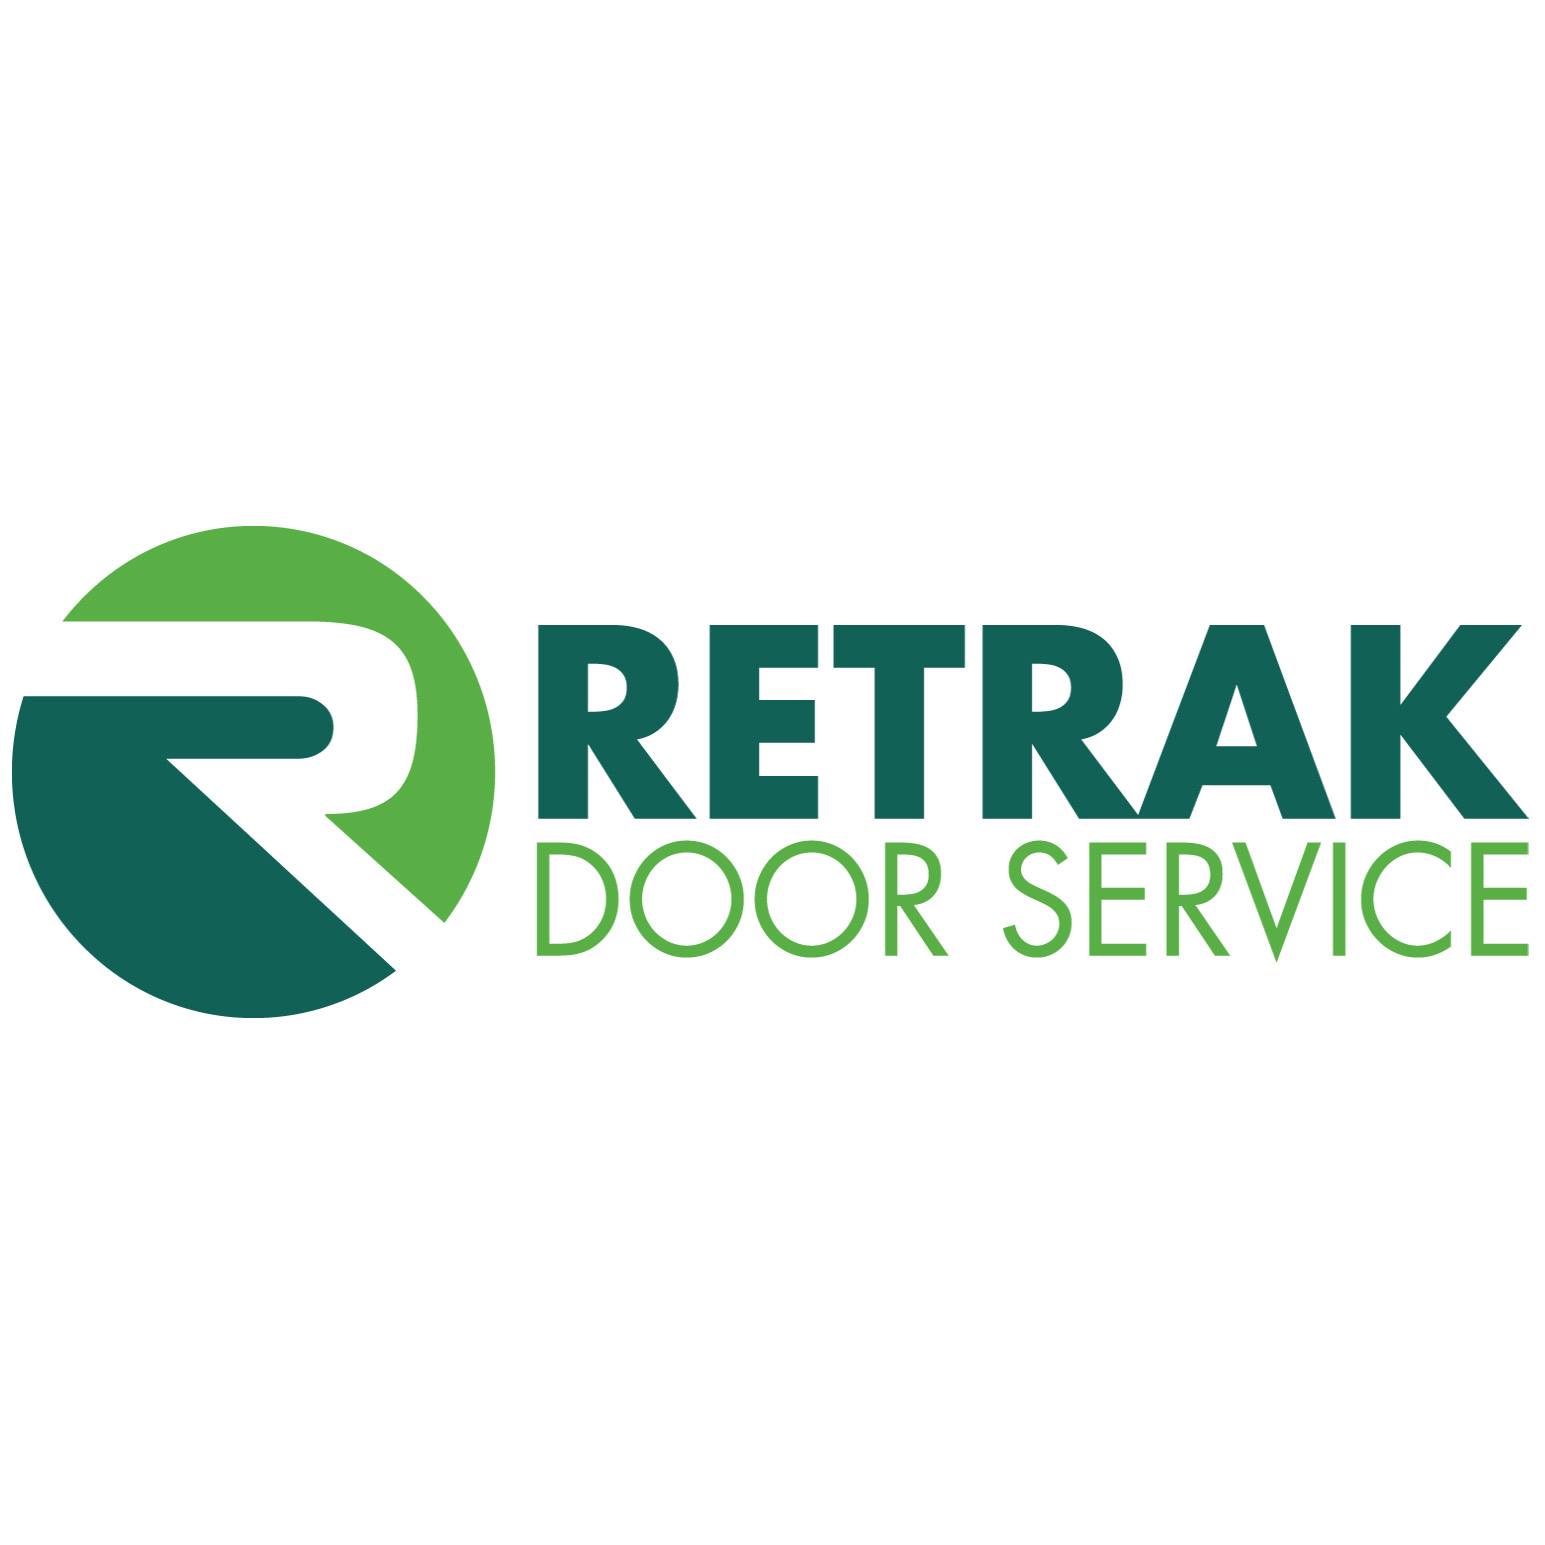 Business logo of Retrak Door Service